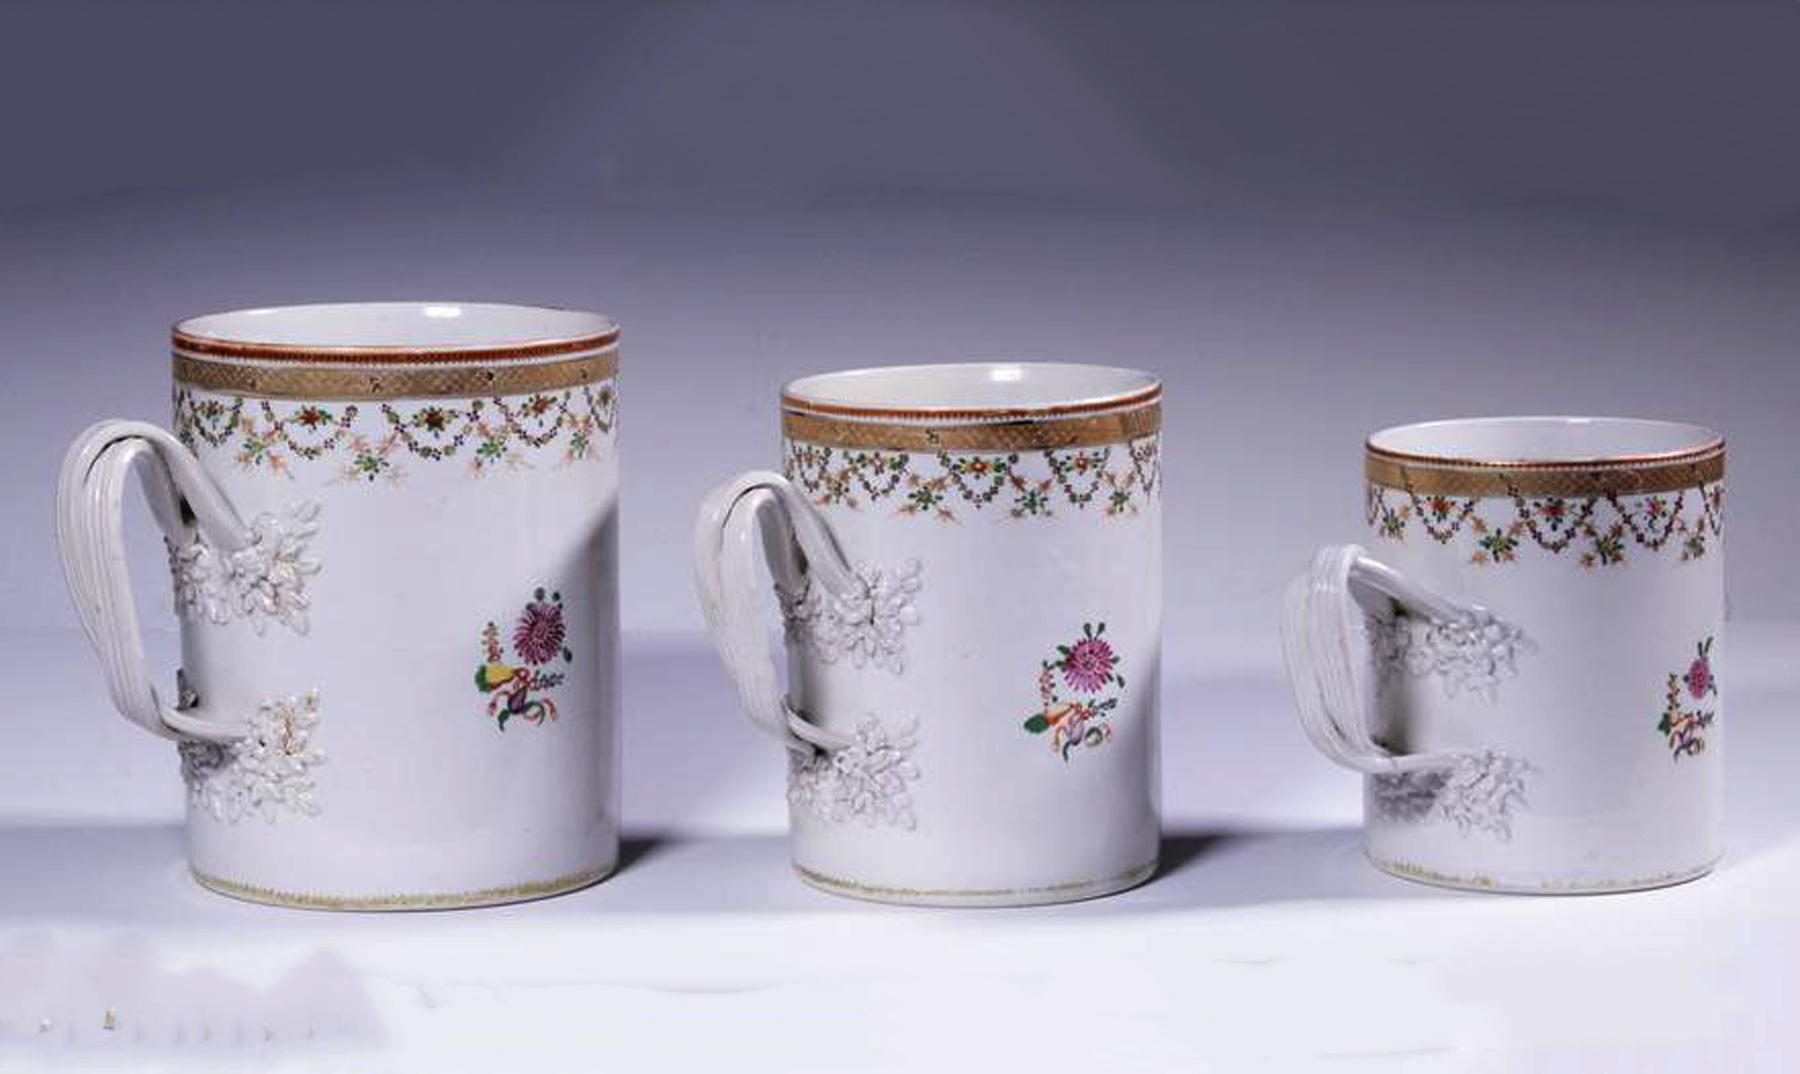 Chinesisches Export-Porzellan Set von abgestuften famille rose Tassen oder Krügen,
CIRCA 1780

Die chinesischen Export-Porzellankrüge oder -becher sind jeweils mit einem neoklassizistischen Urnendesign mit Blumen innerhalb eines grünen